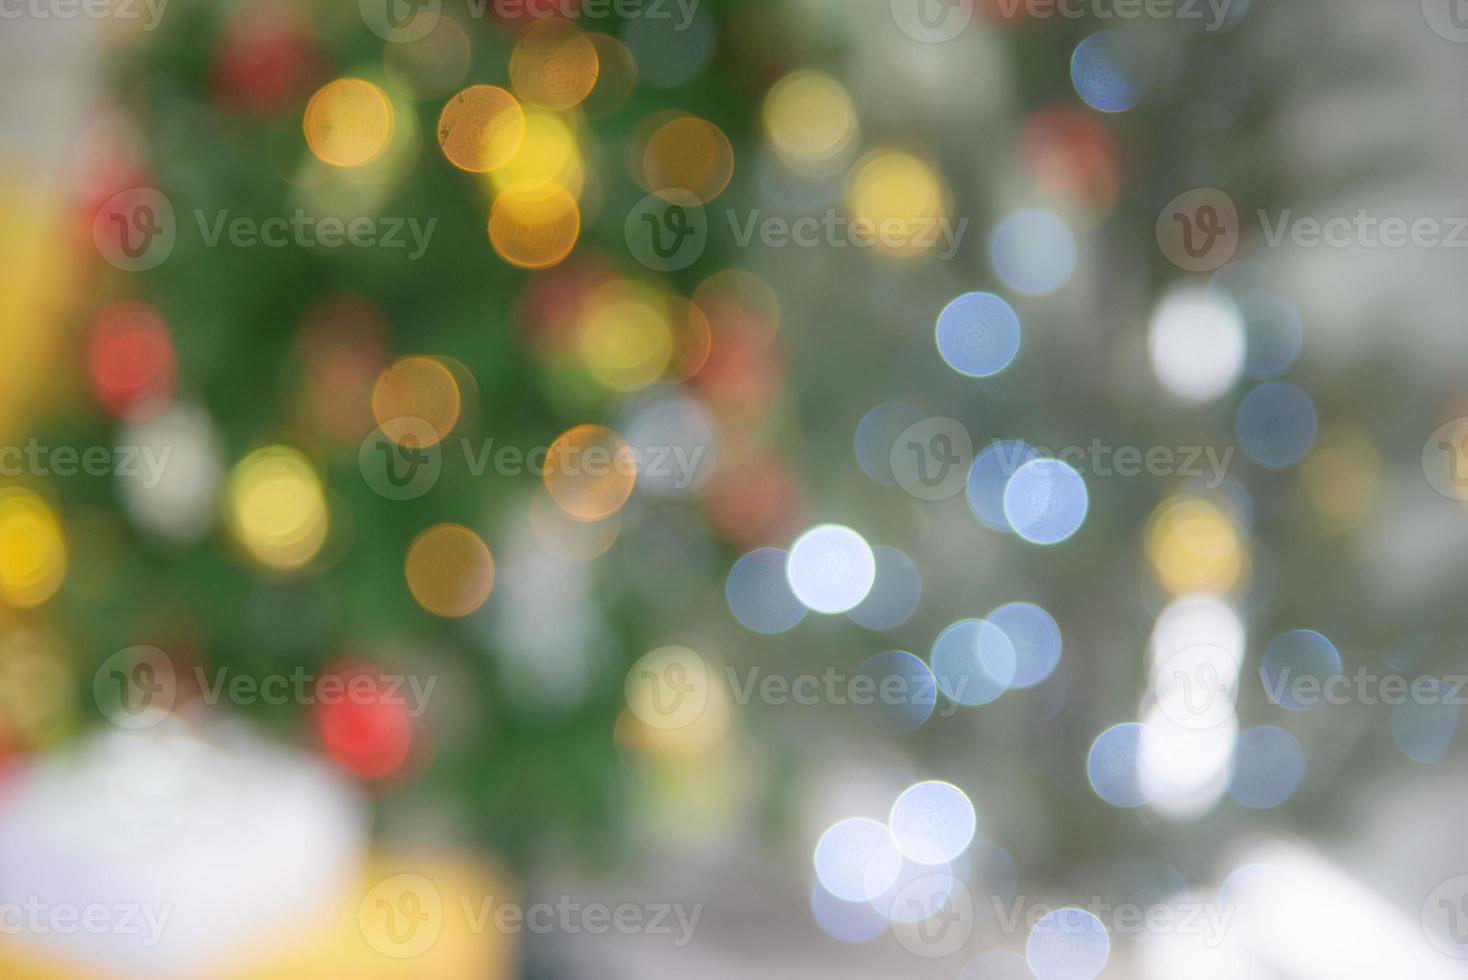 fundo claro colorido abstrato com bokeh vermelho laranja amarelo azul branco verde da árvore de natal decorada foto